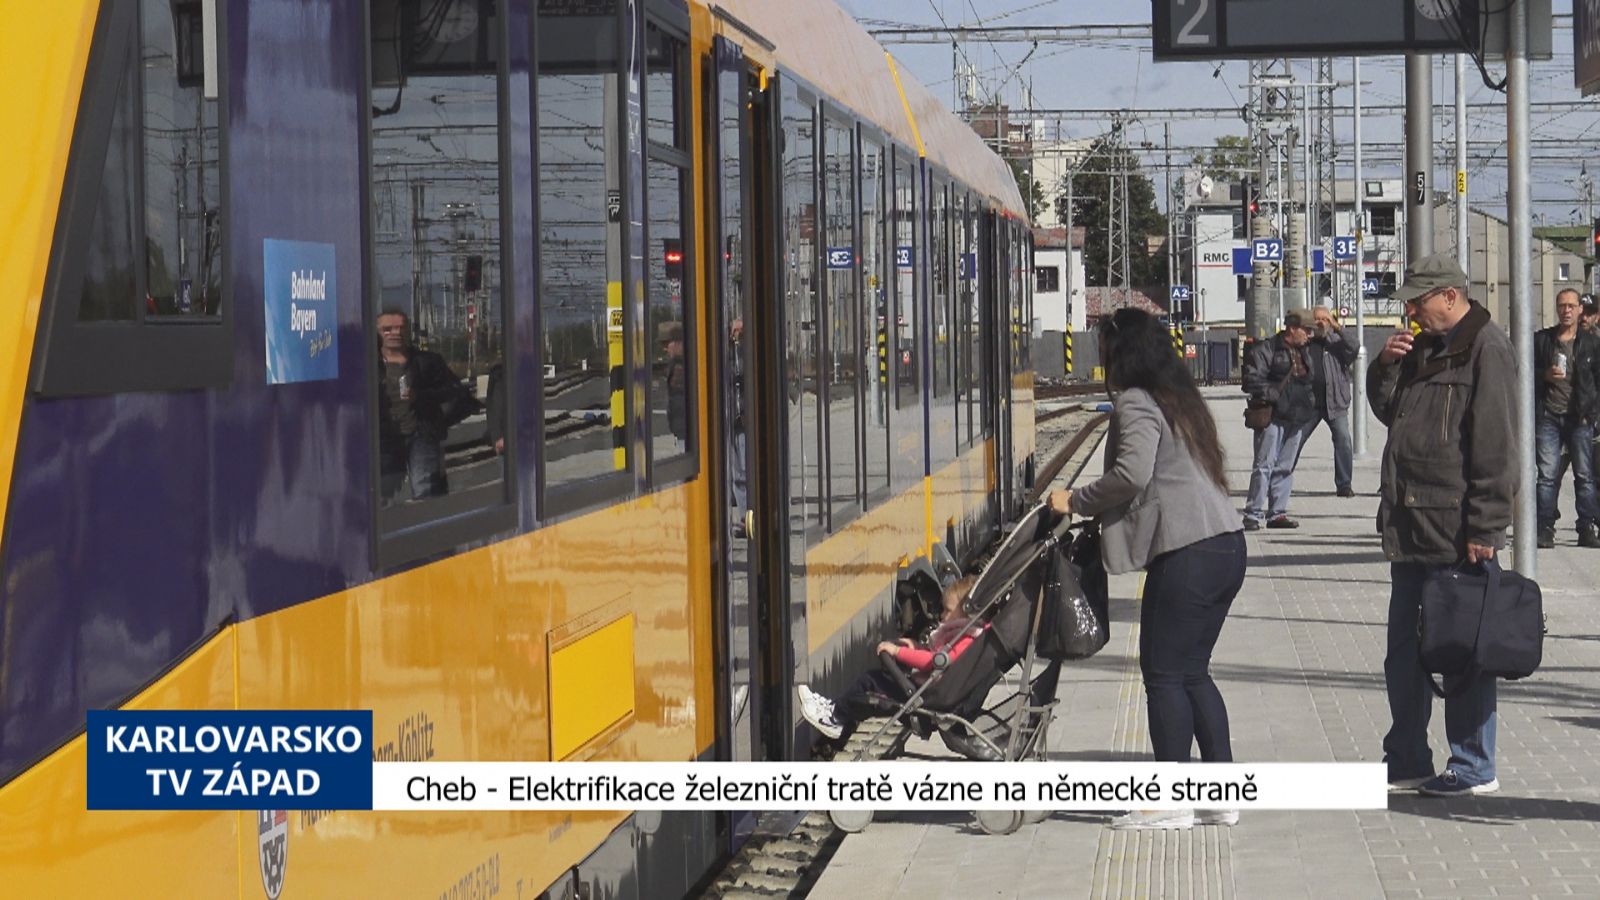 Cheb: Elektrifikace železniční tratě vázne na německé straně (TV Západ)